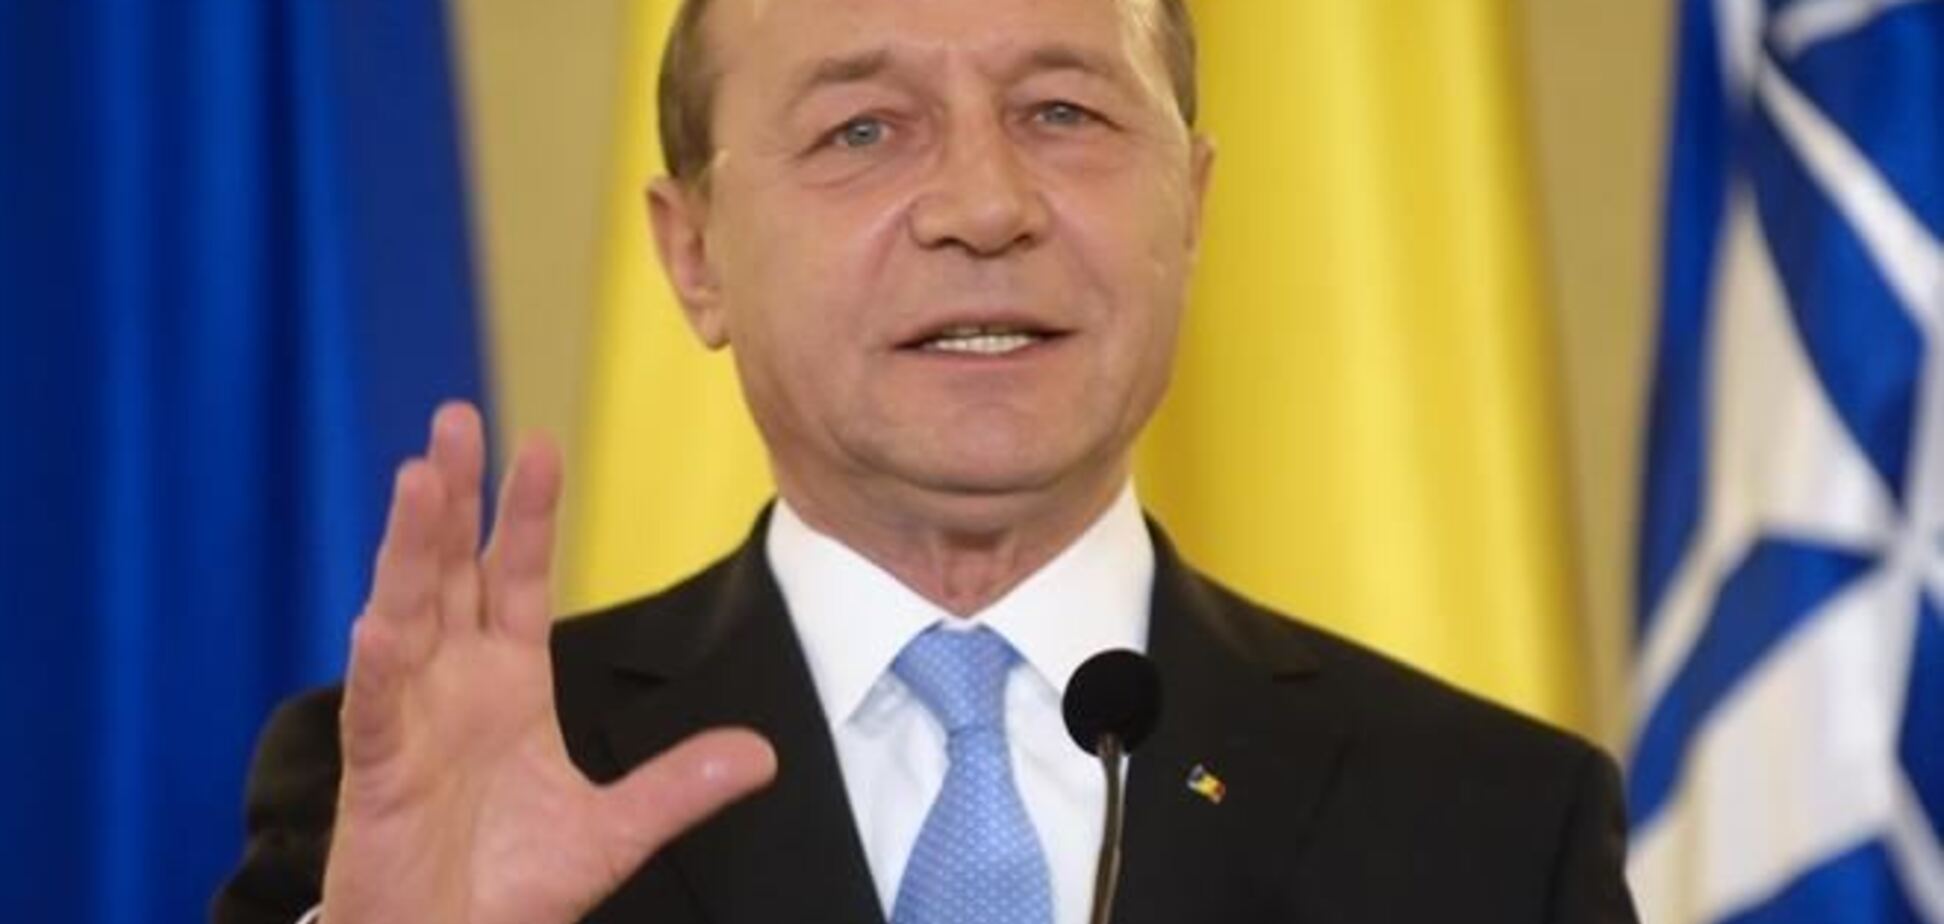 Румунія хоче брати участь у врегулюванні ситуації в Україні